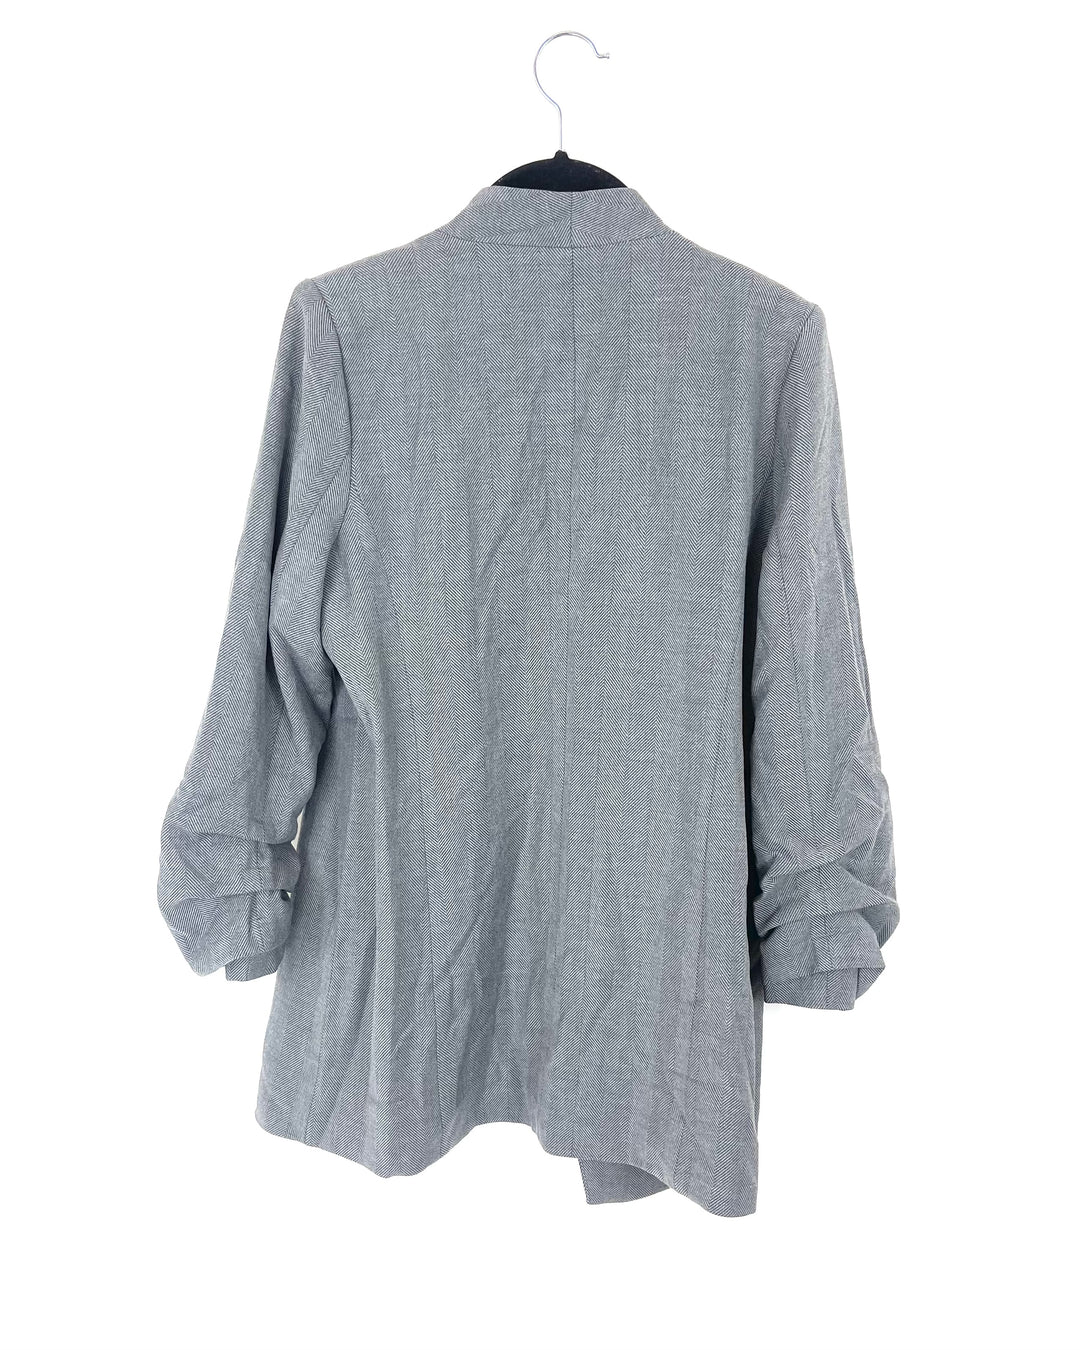 Grey Striped Cardigan - Size 18/20